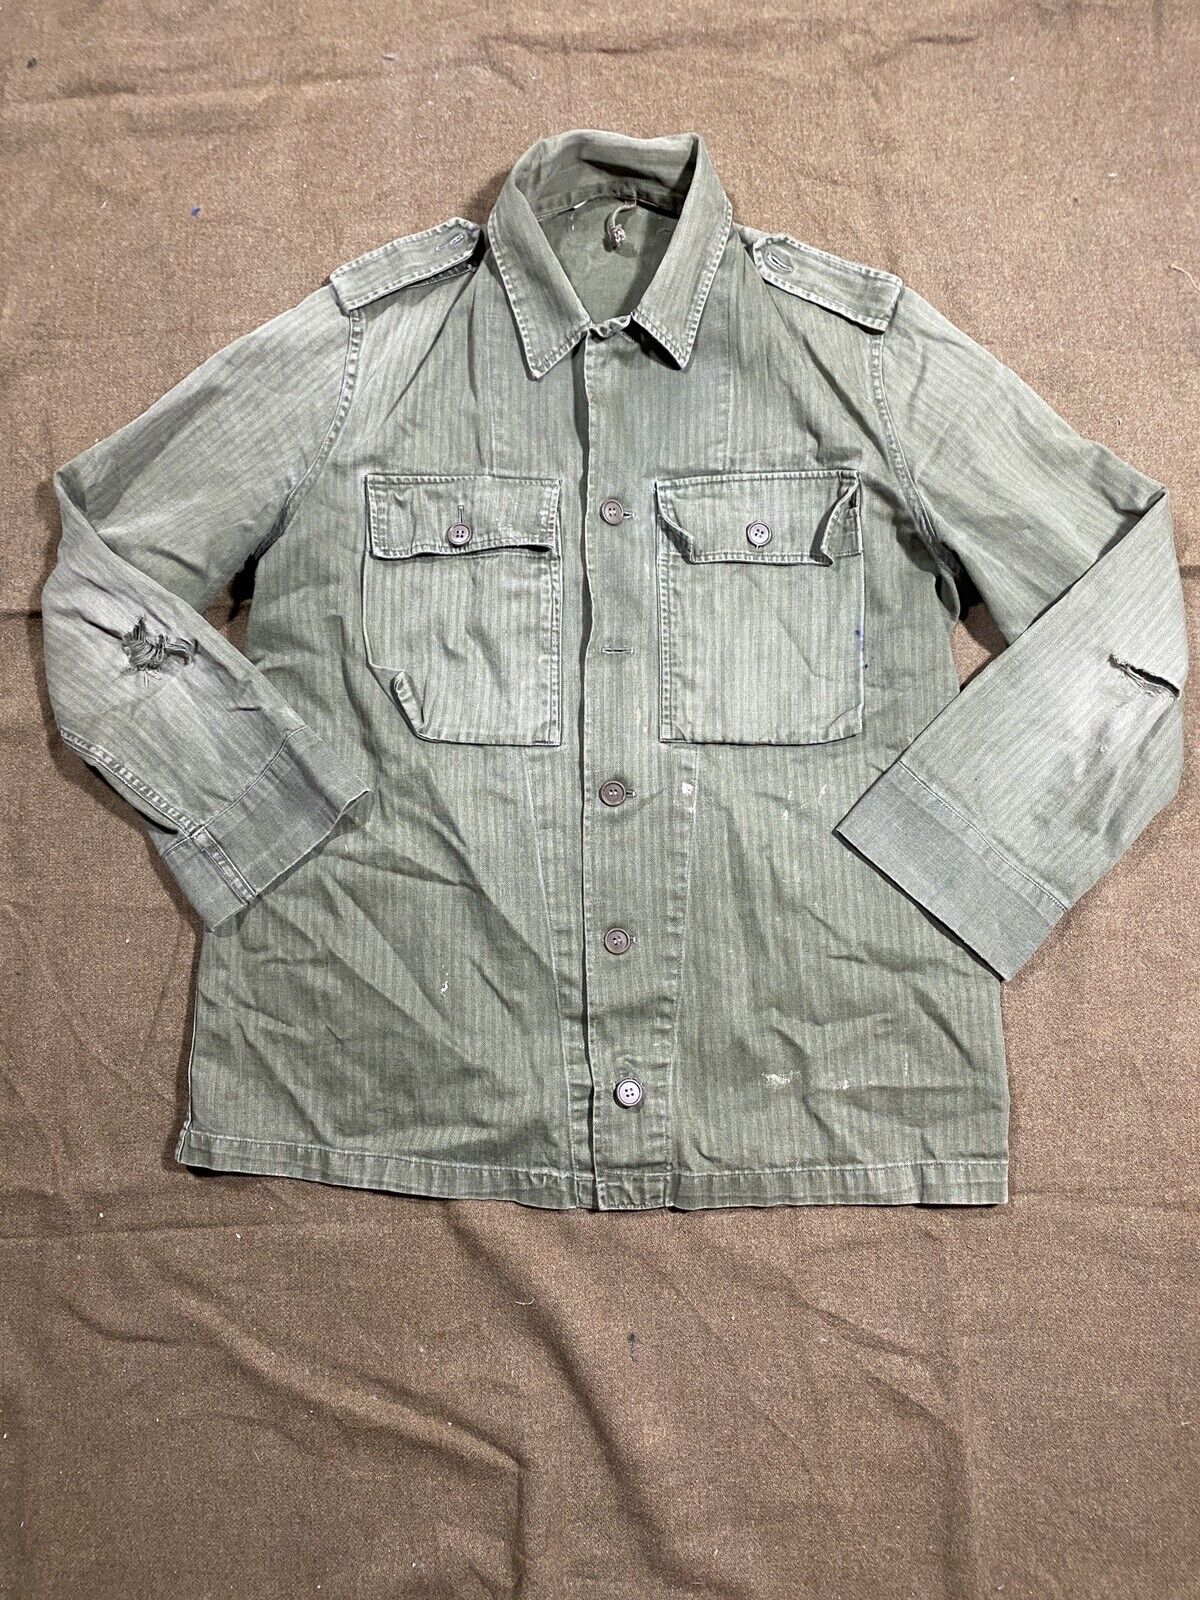 Vintage HBT Military Shirt Field Jacket USMC Fatigue vietnam korea